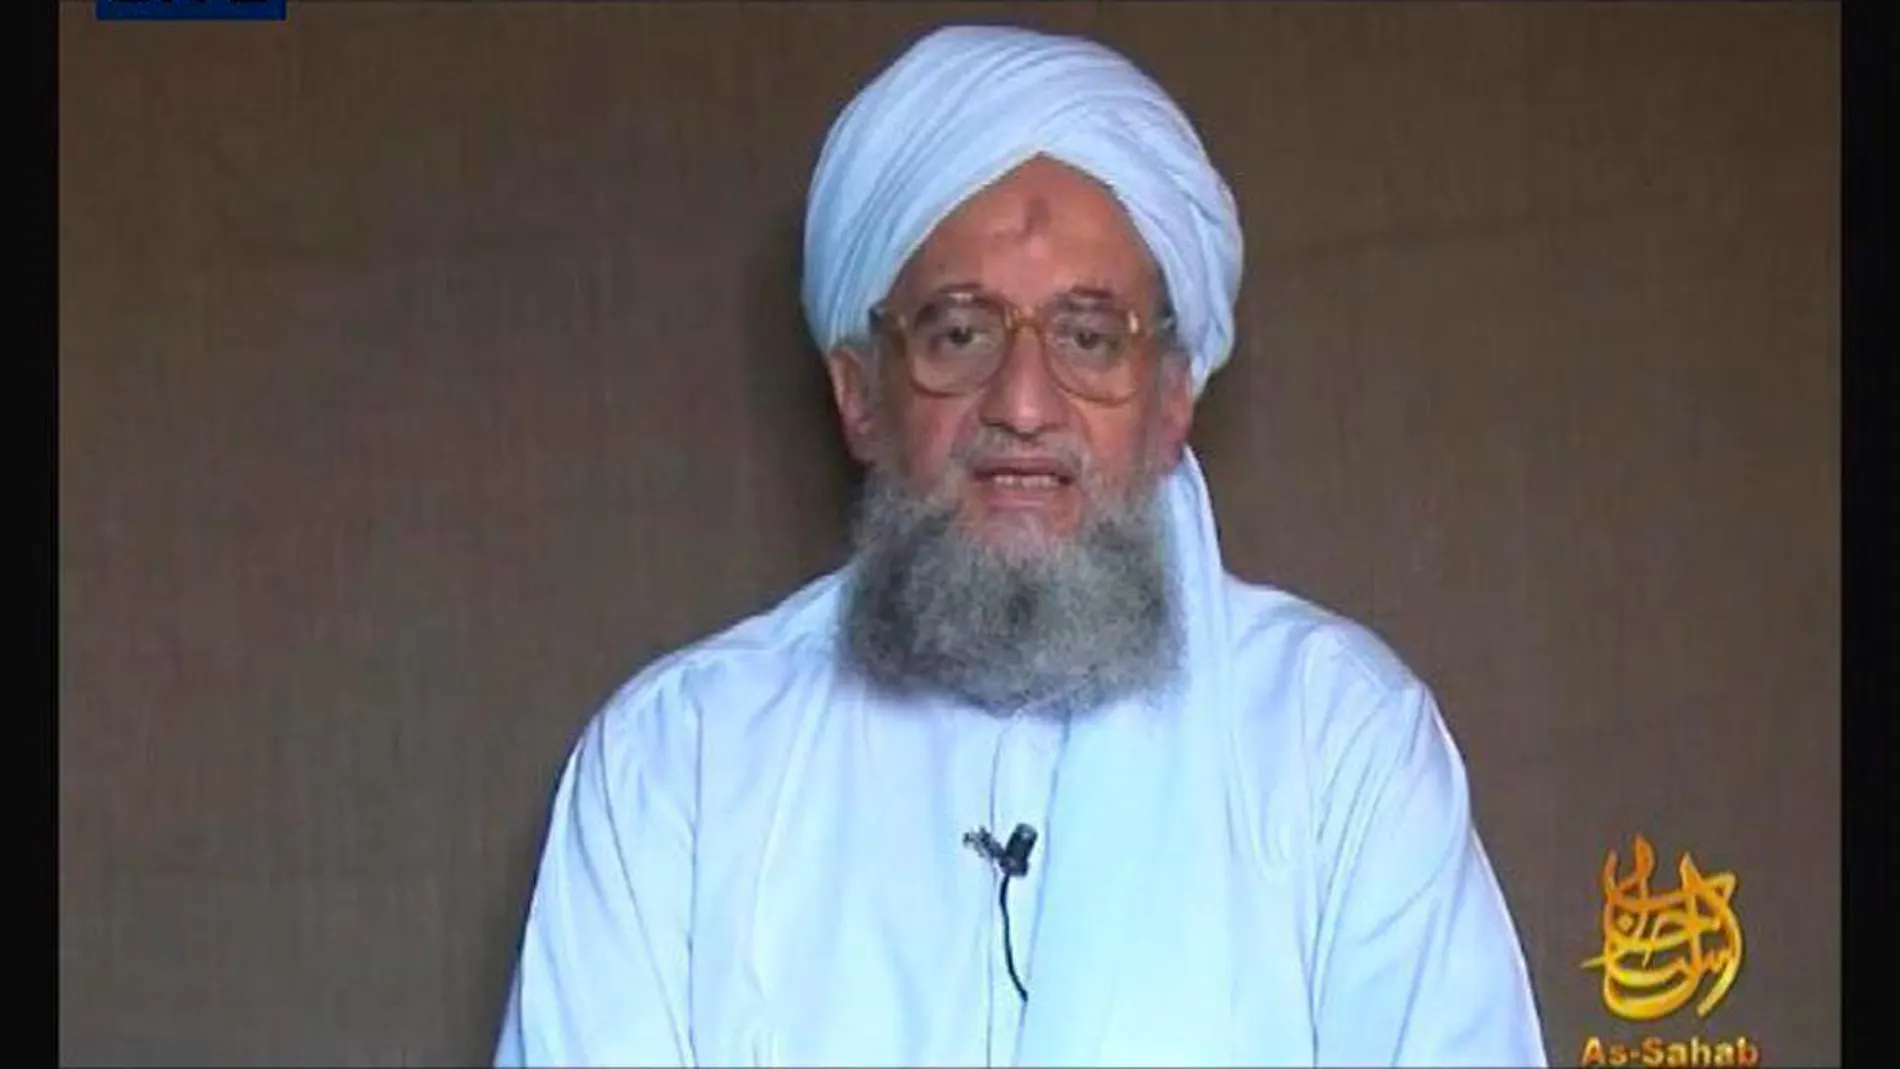 El líder de Al Qaeda, Ayman el Zawahiri, estaba en un piso de seguridad en Kabul